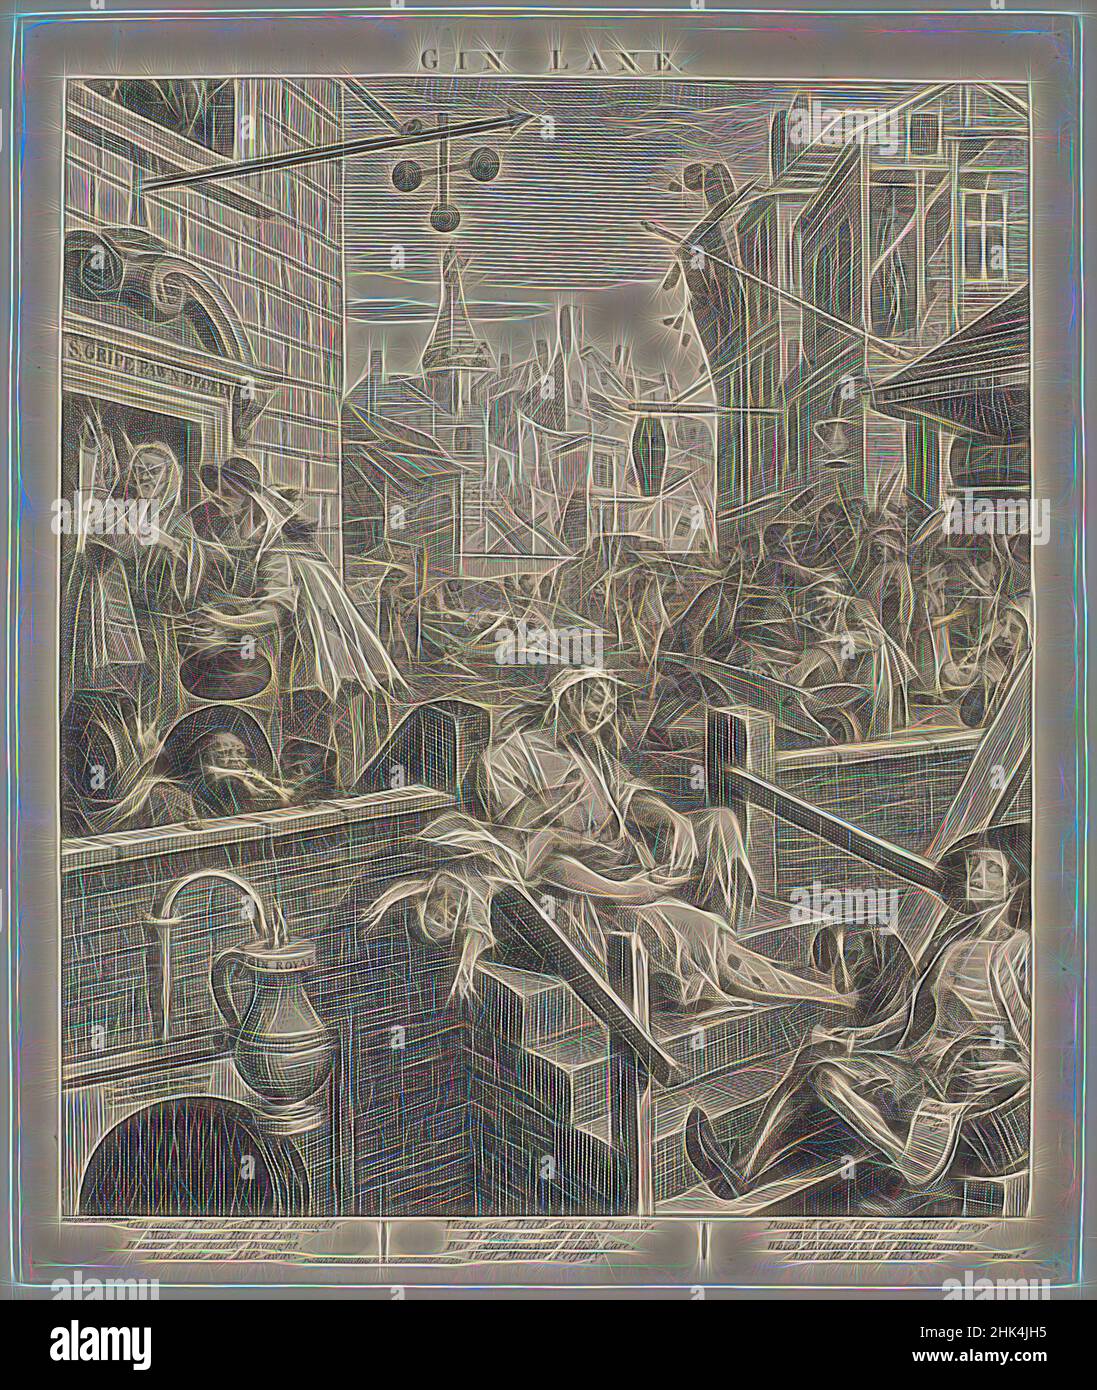 Inspiré de Gin Lane, William Hogarth, britannique, 1697-1764, gravure sur papier à poser, 1751, 15 3/8 x 12 3/4 po, 39 x 32,4 cm, réimaginé par Artotop. L'art classique réinventé avec une touche moderne. Conception de lumière chaleureuse et gaie, de luminosité et de rayonnement de lumière. La photographie s'inspire du surréalisme et du futurisme, embrassant l'énergie dynamique de la technologie moderne, du mouvement, de la vitesse et révolutionne la culture Banque D'Images